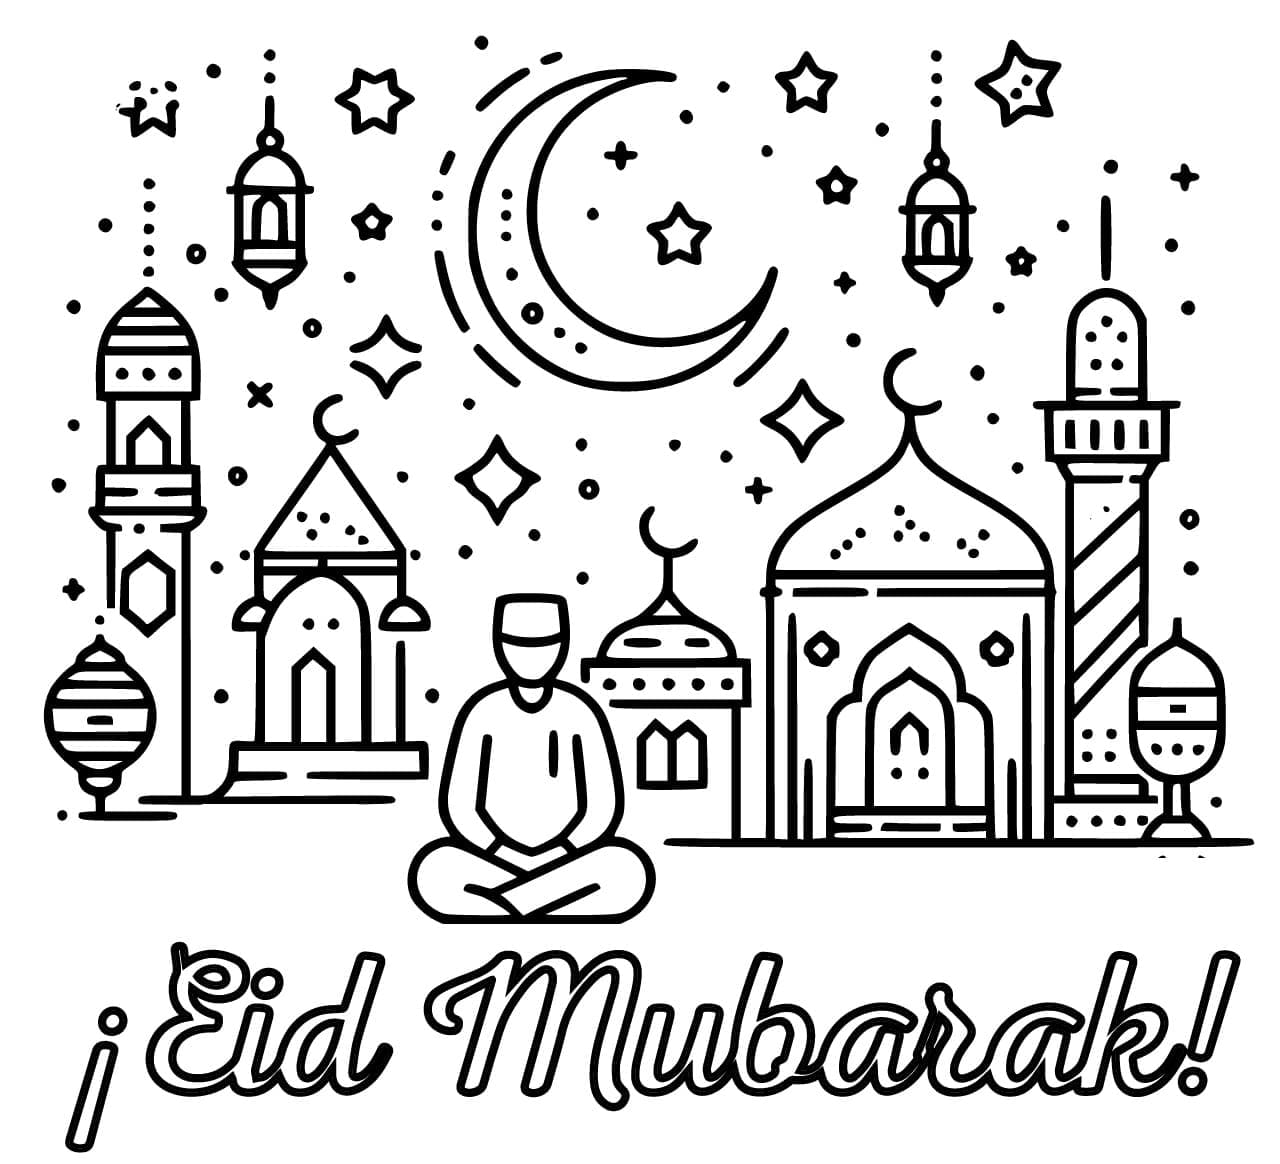 Afdrukbare Eid Moebarak voor kinderen